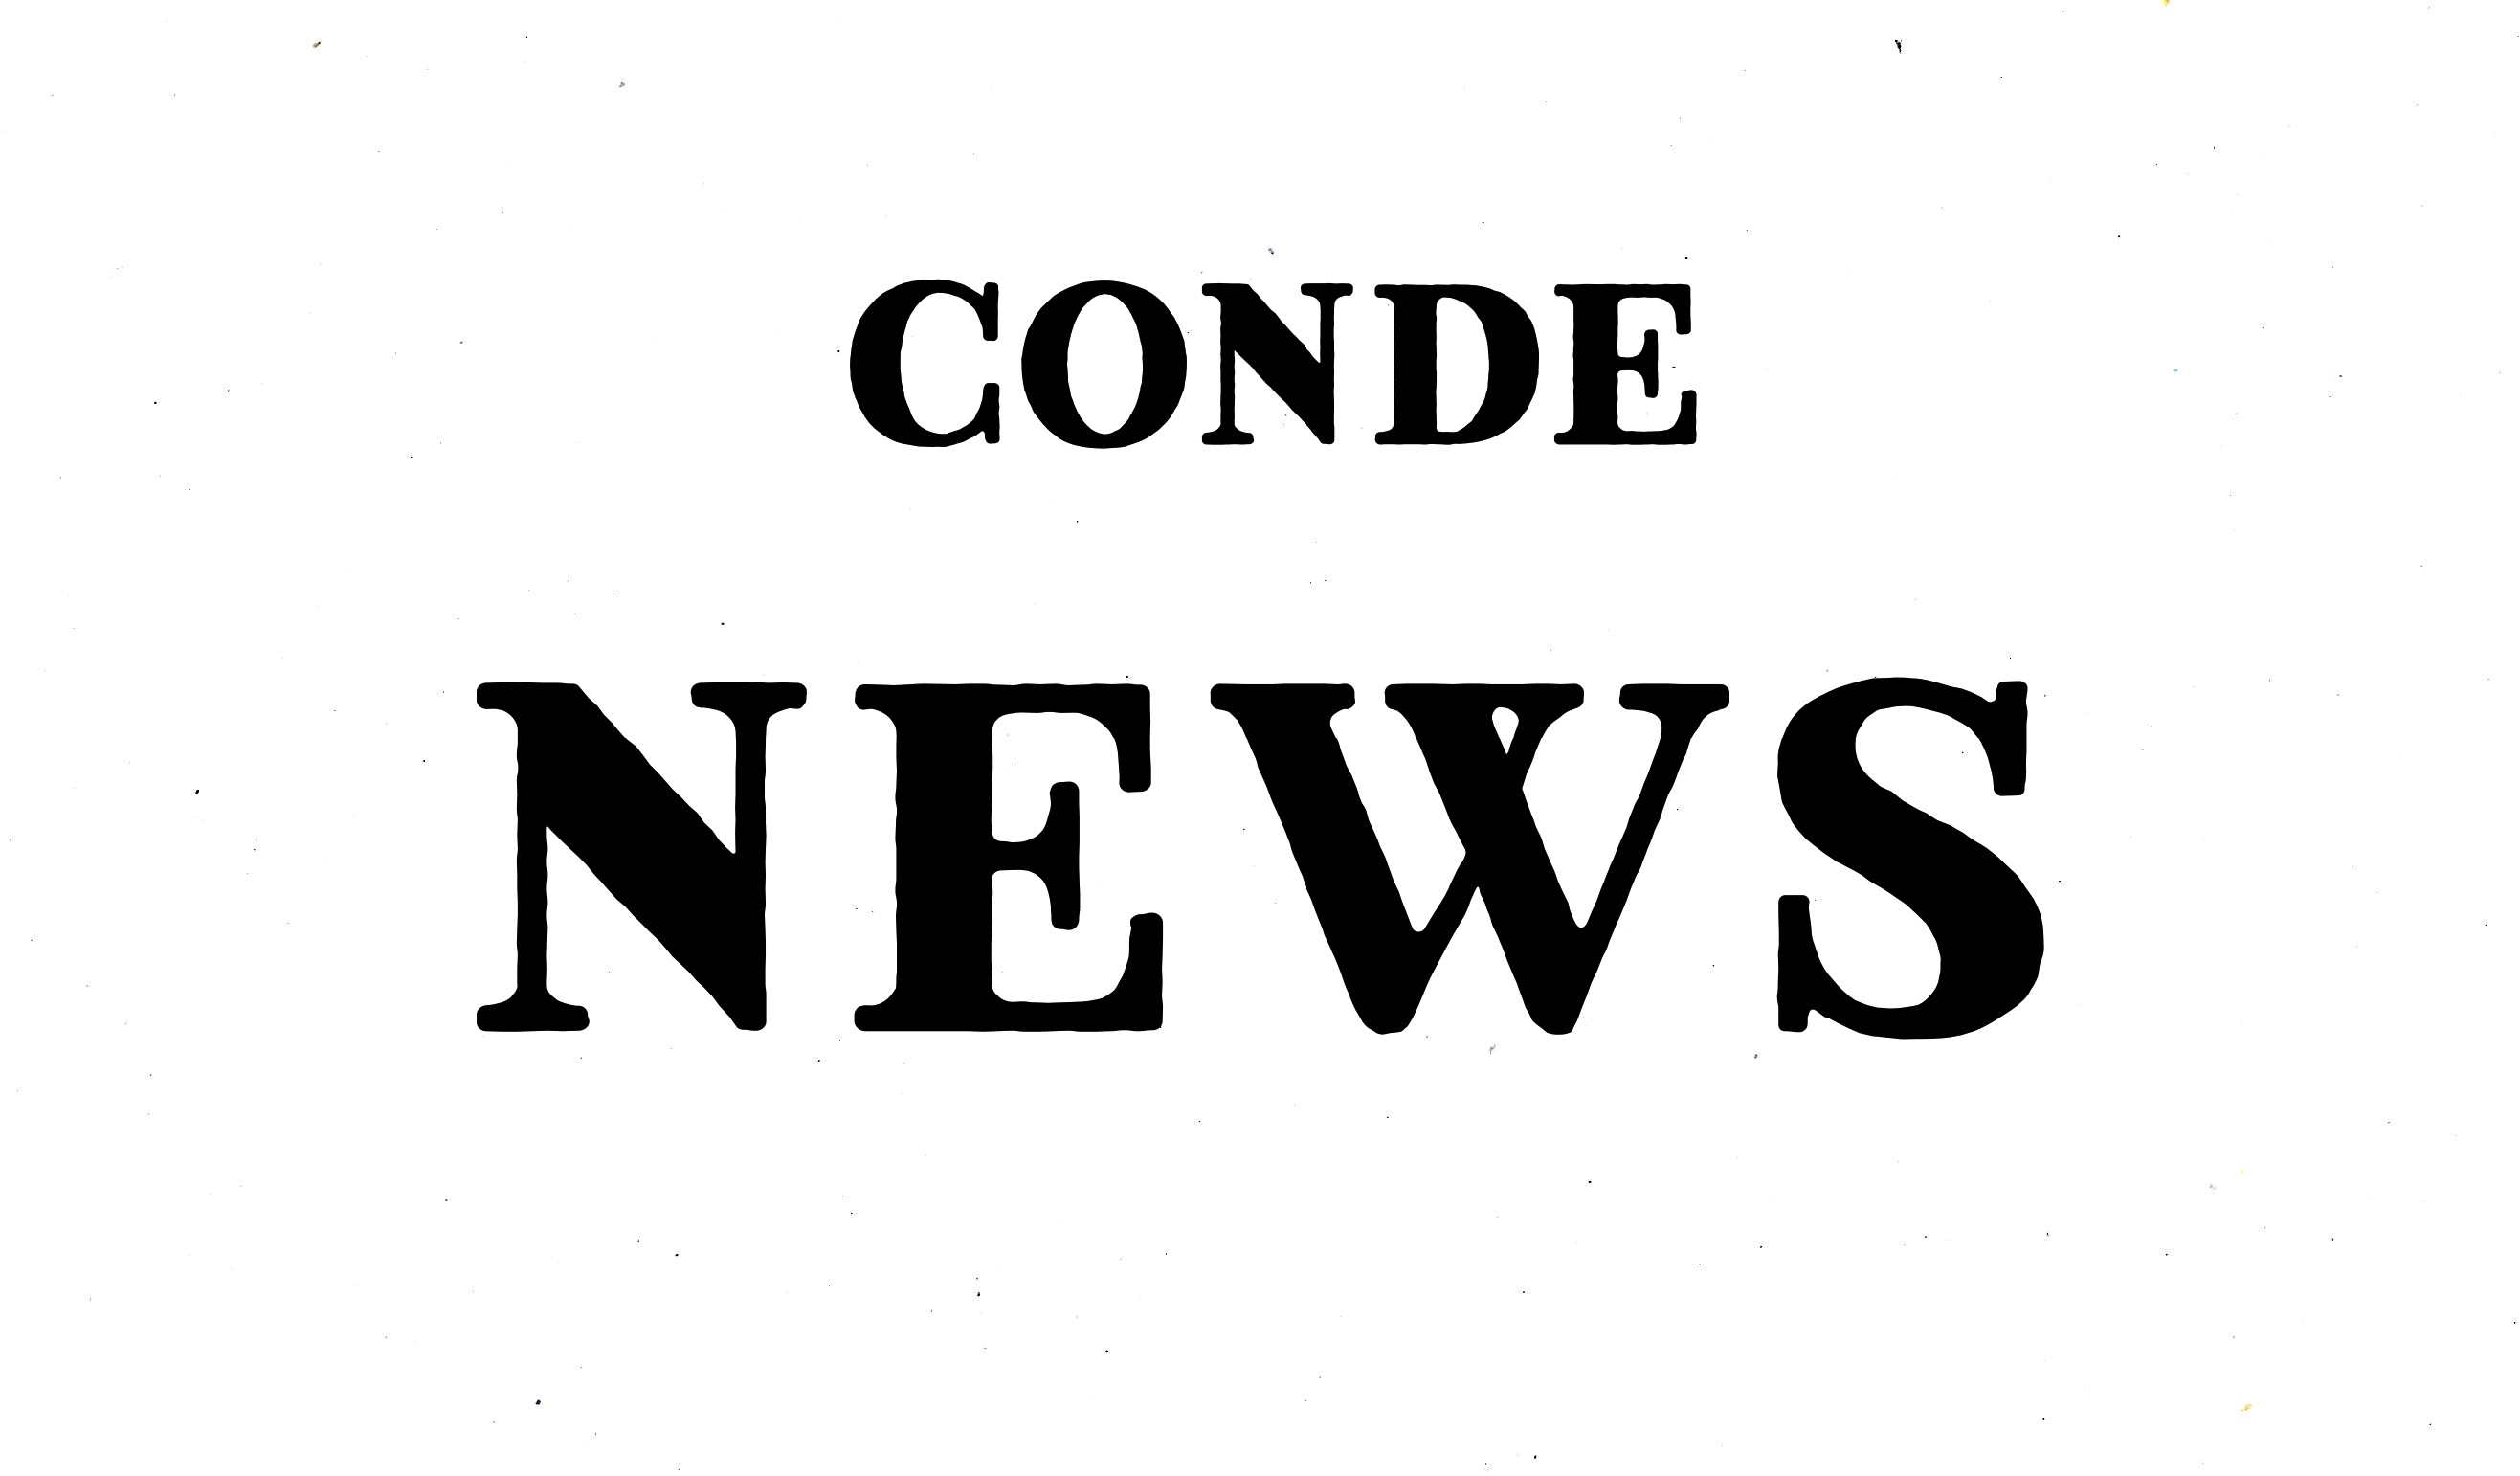 Conde News